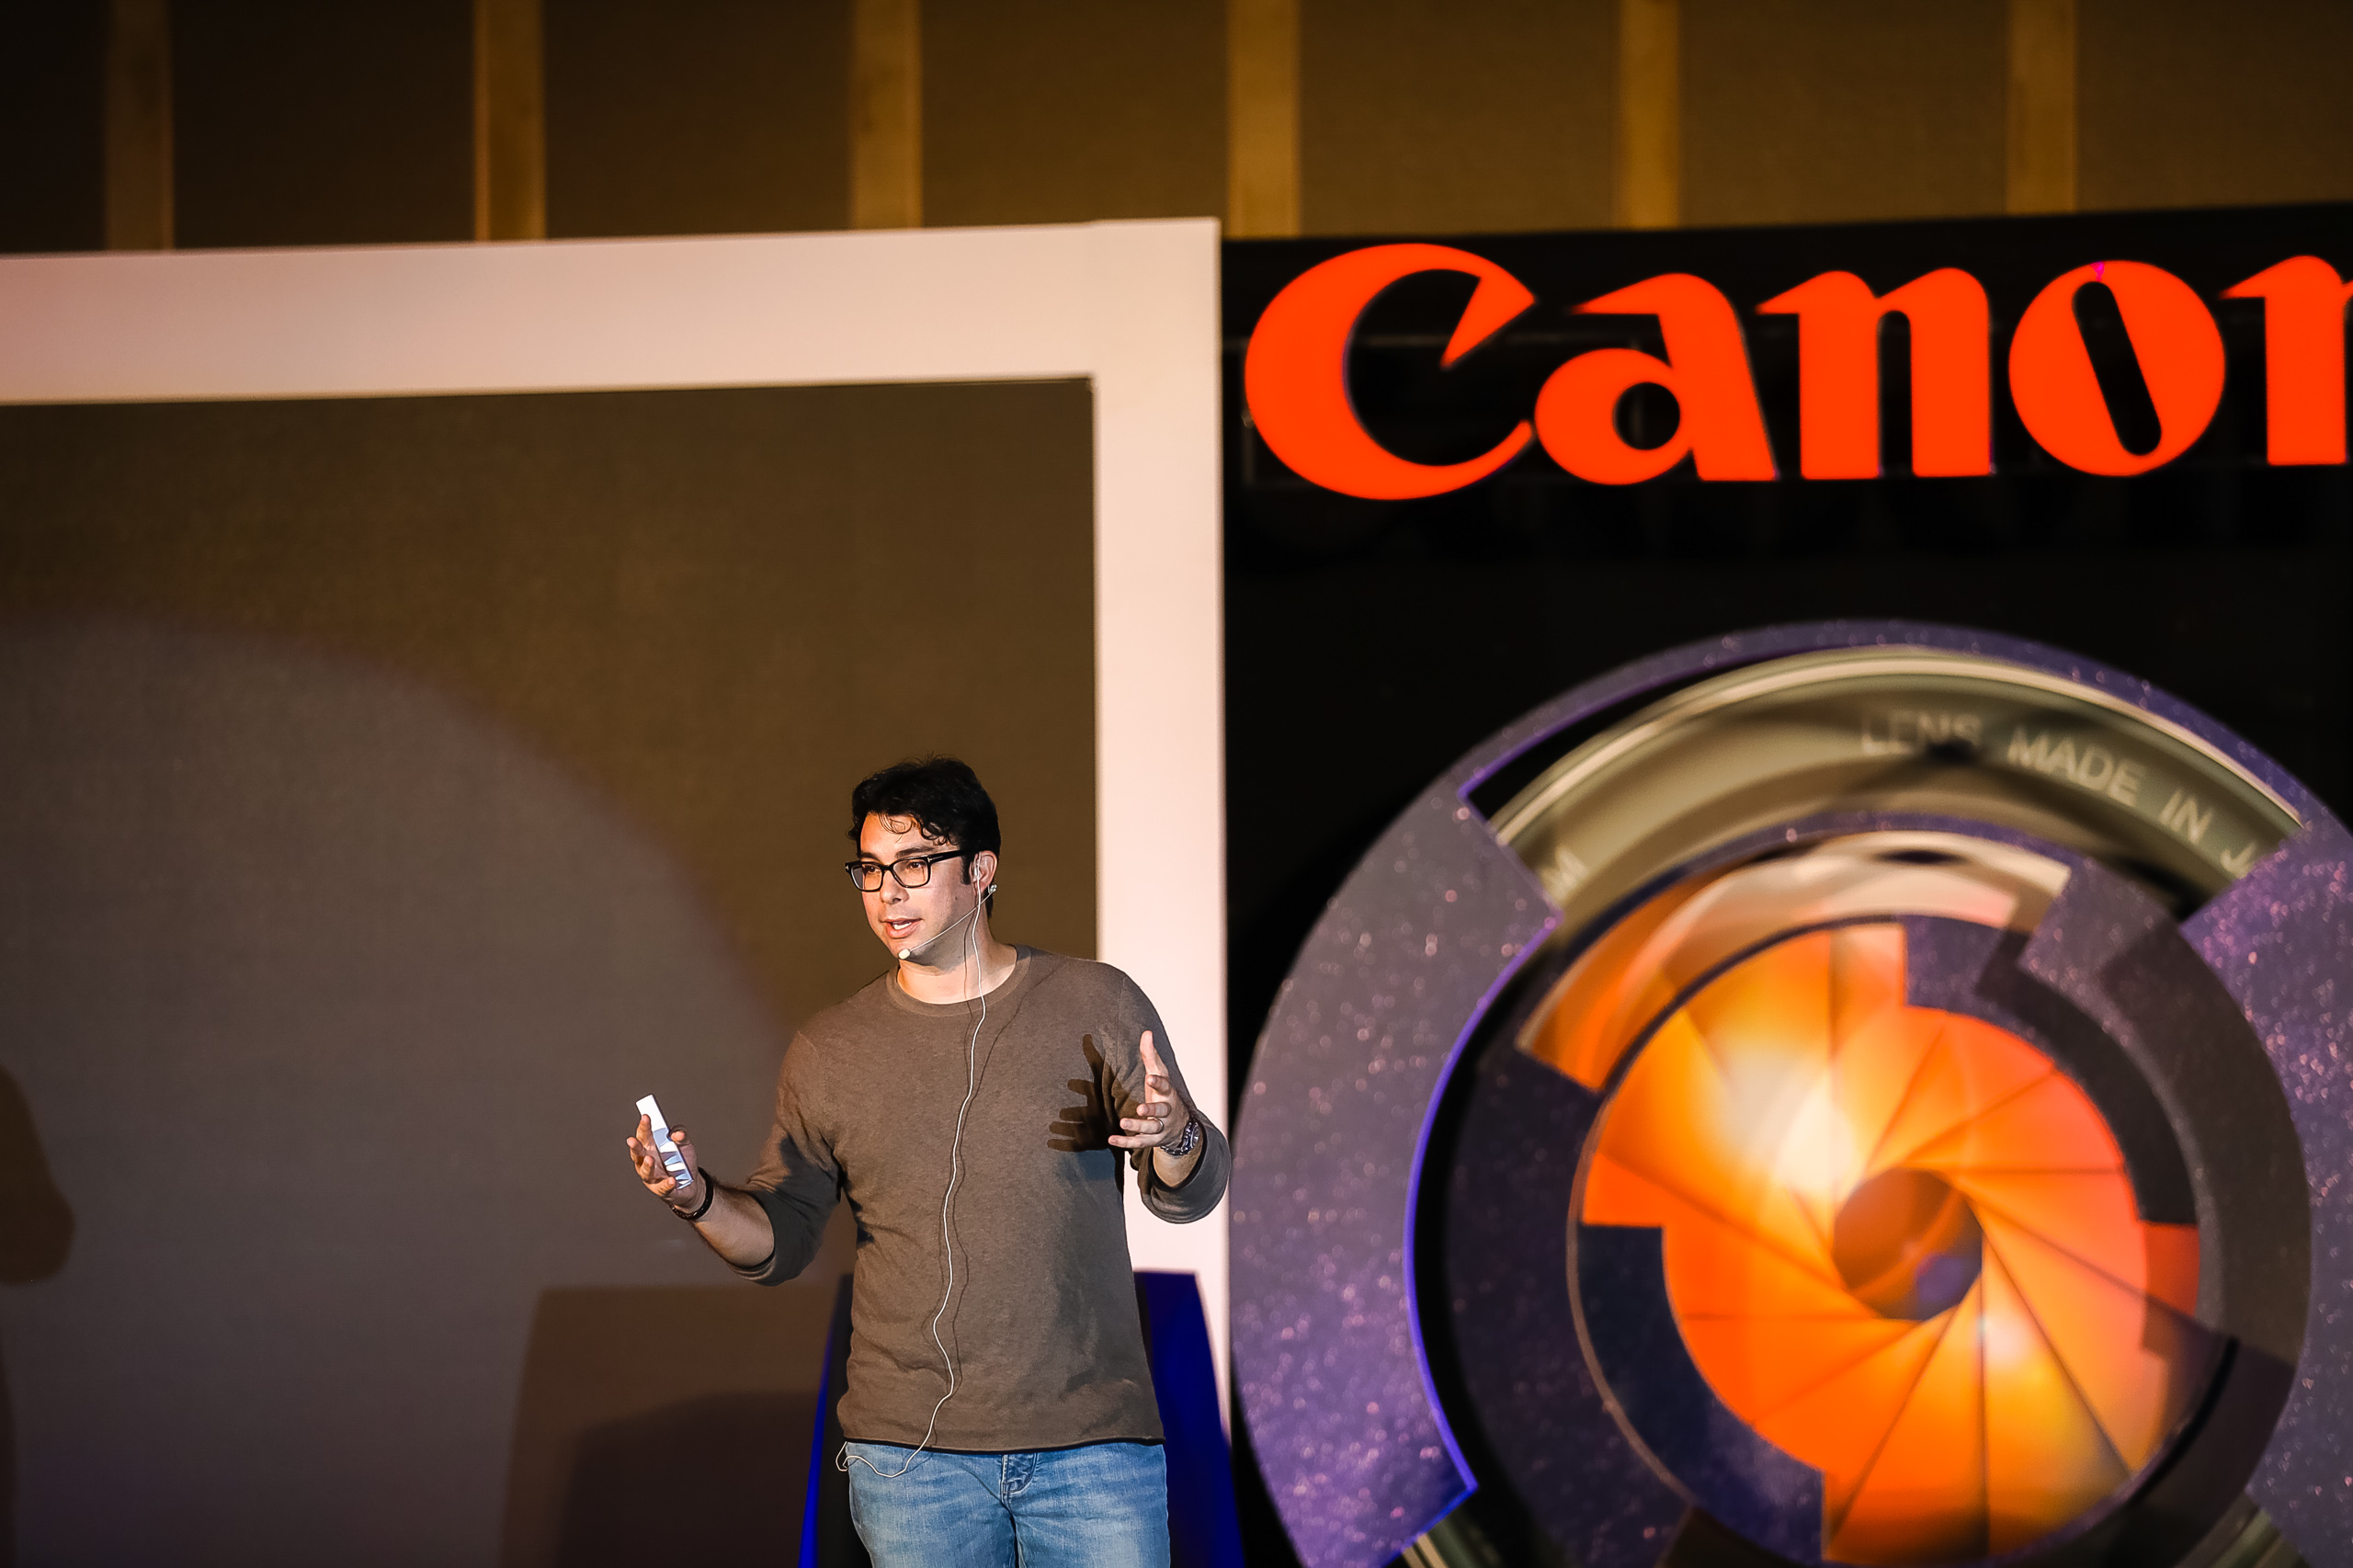 Canon EOS R làm nức lòng người yêu nhiếp ảnh trong sự kiện “Tầm cao mới của nghệ thuật nhiếp ảnh”